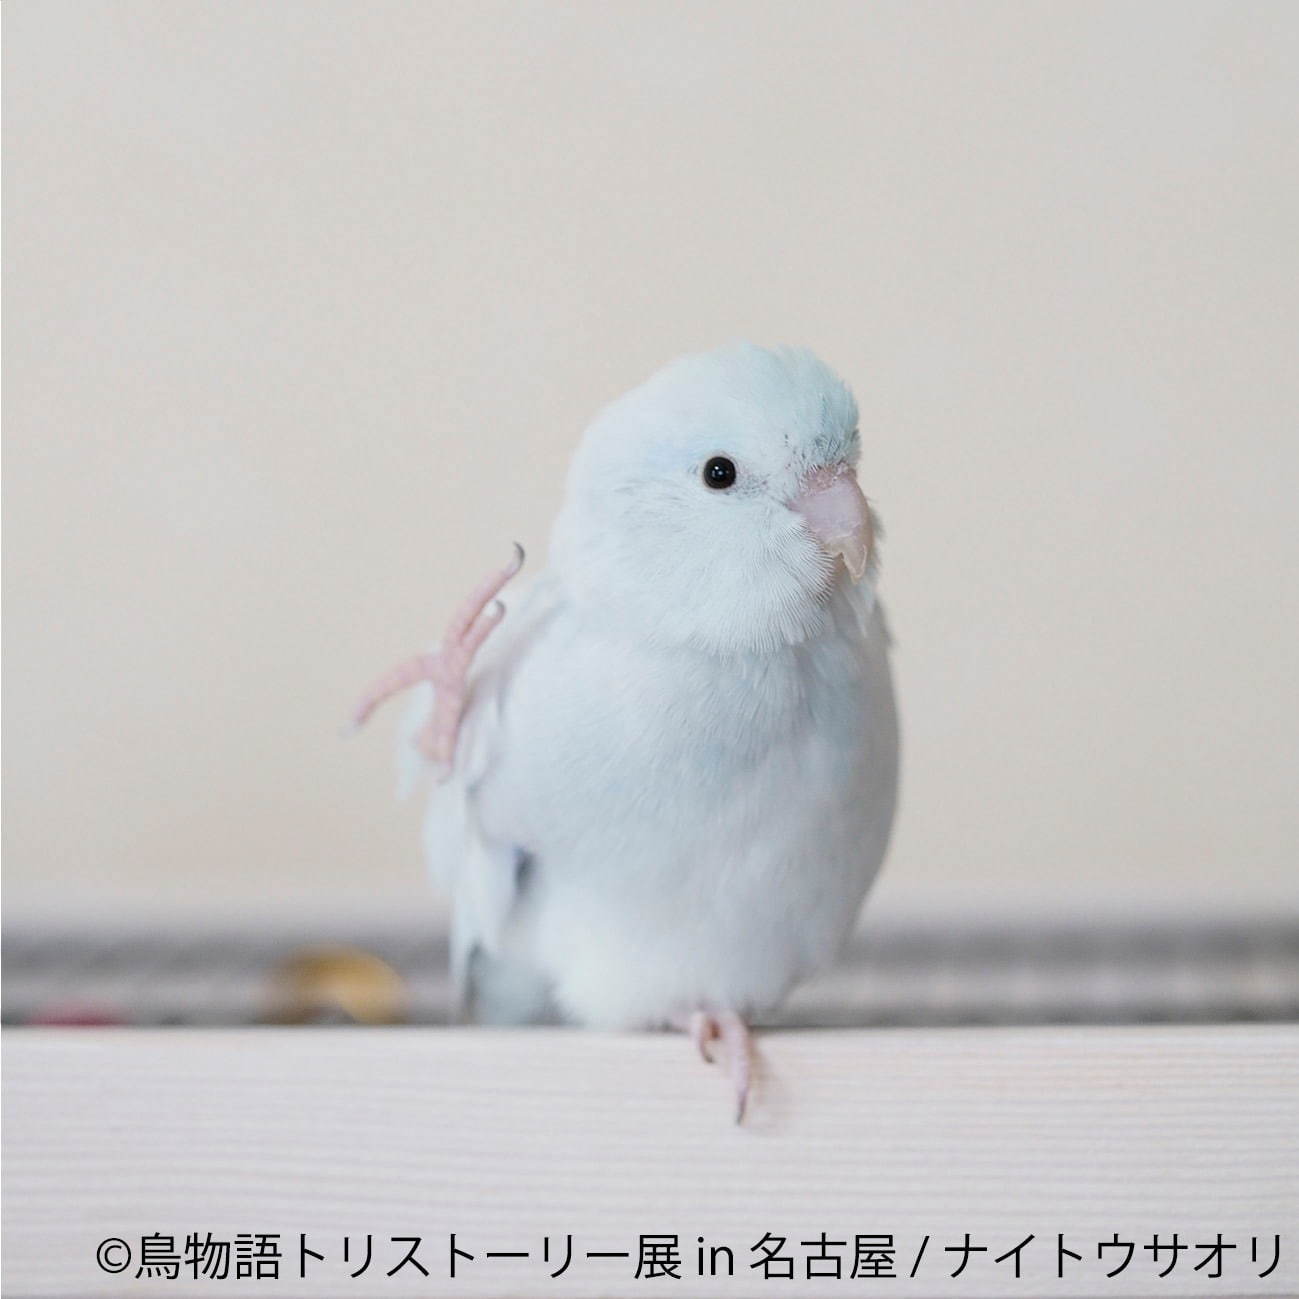 「鳥物語トリストーリー展」名古屋で、鳥の“一瞬の美しさ”を表した写真展＆ハンドメイドグッズ物販｜写真9